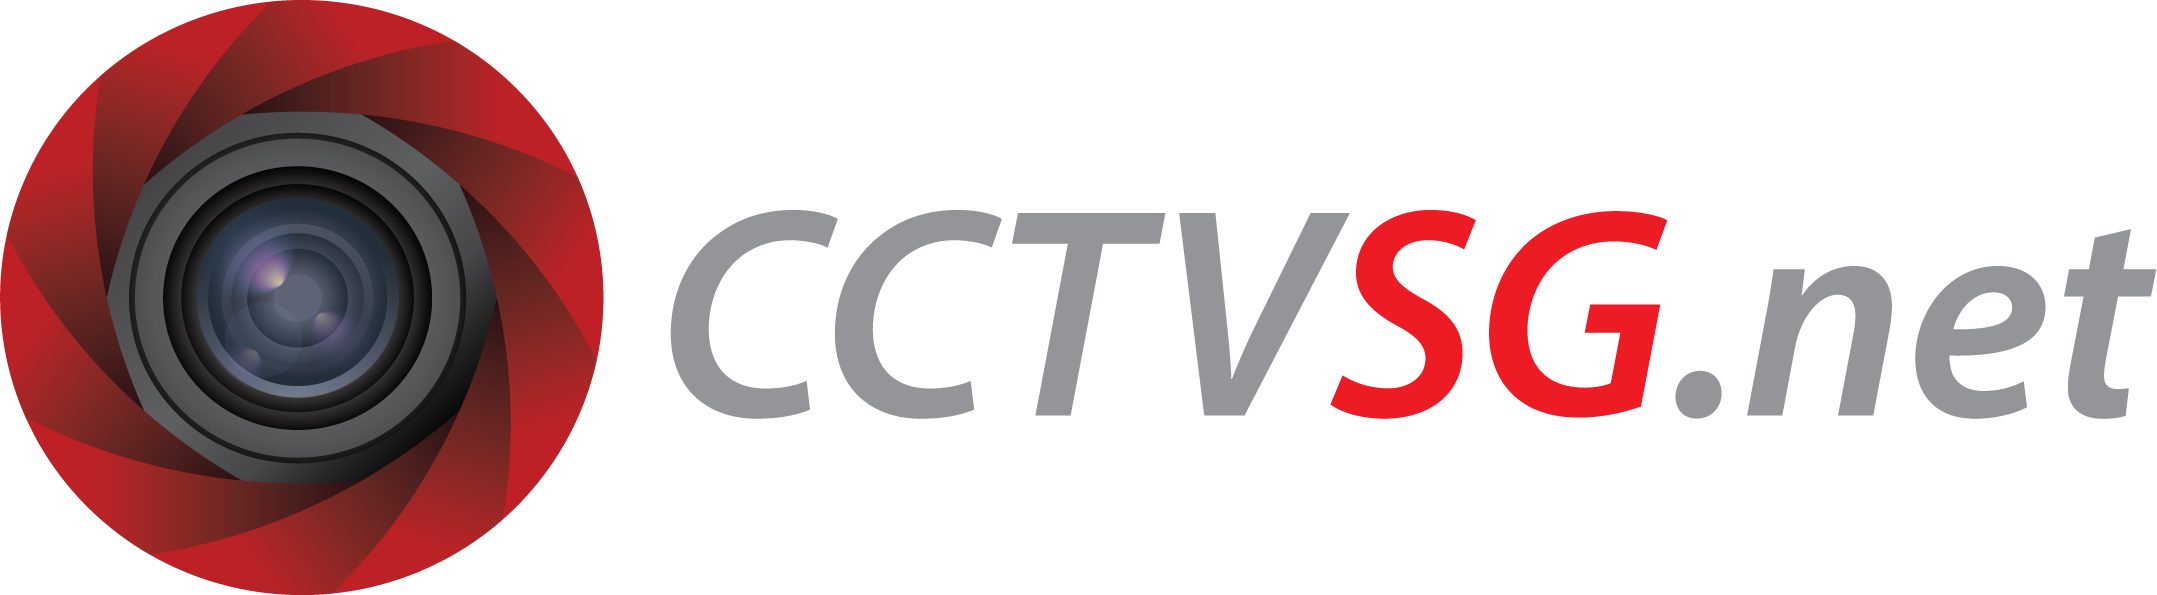 cctvsg.net logo